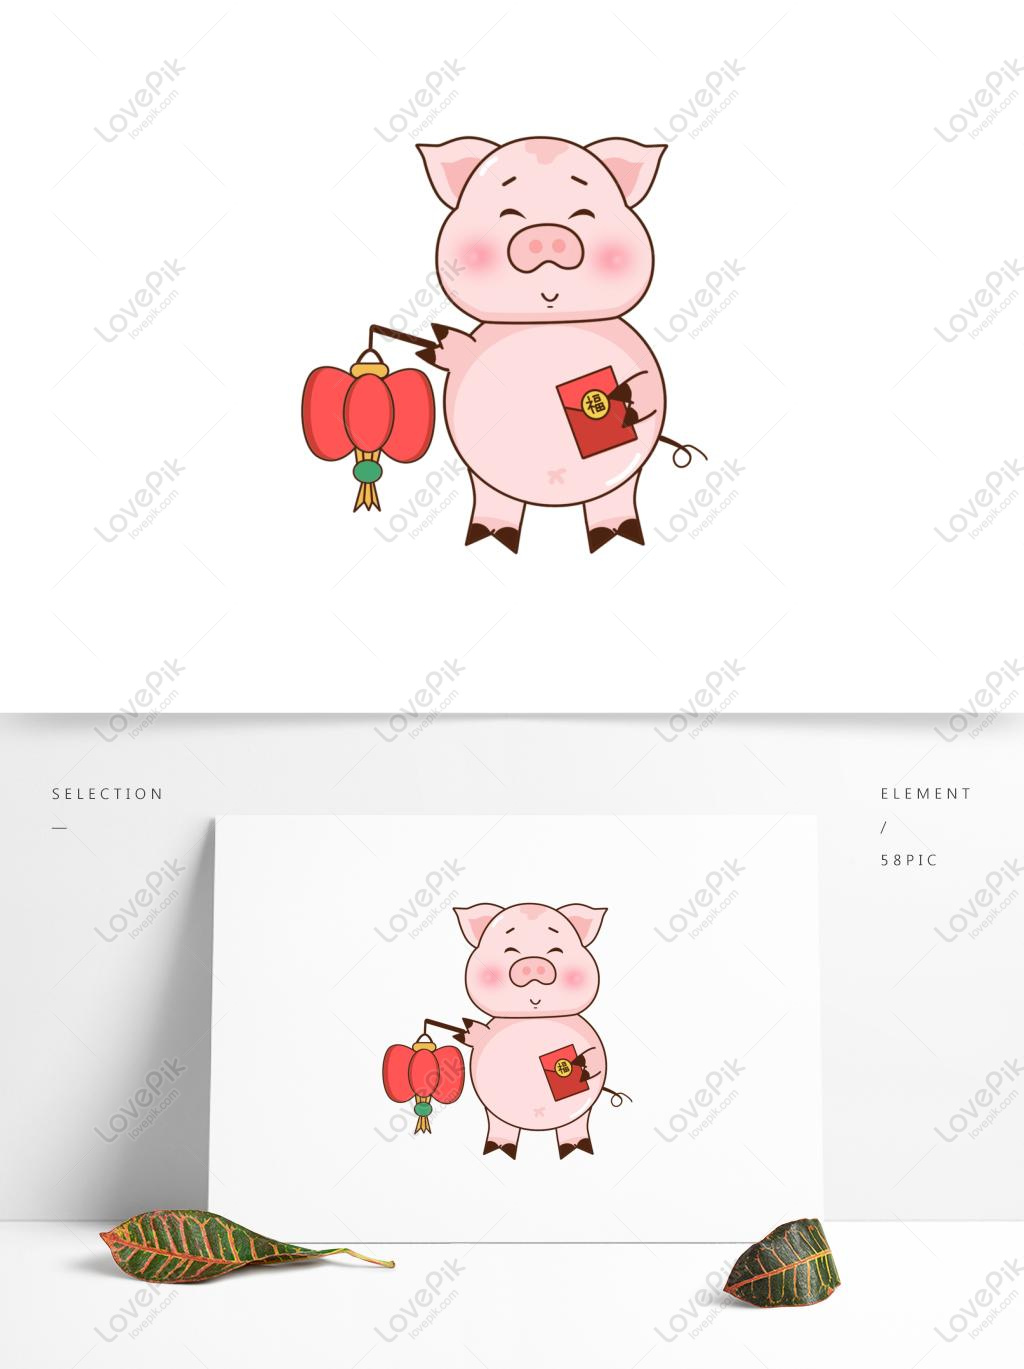 Lợn con: Có ai yêu mộ chú lợn con đáng yêu này không? Hãy xem bức ảnh và khám phá những trò chơi và vui nhộn cùng chú lợn con này nhé!